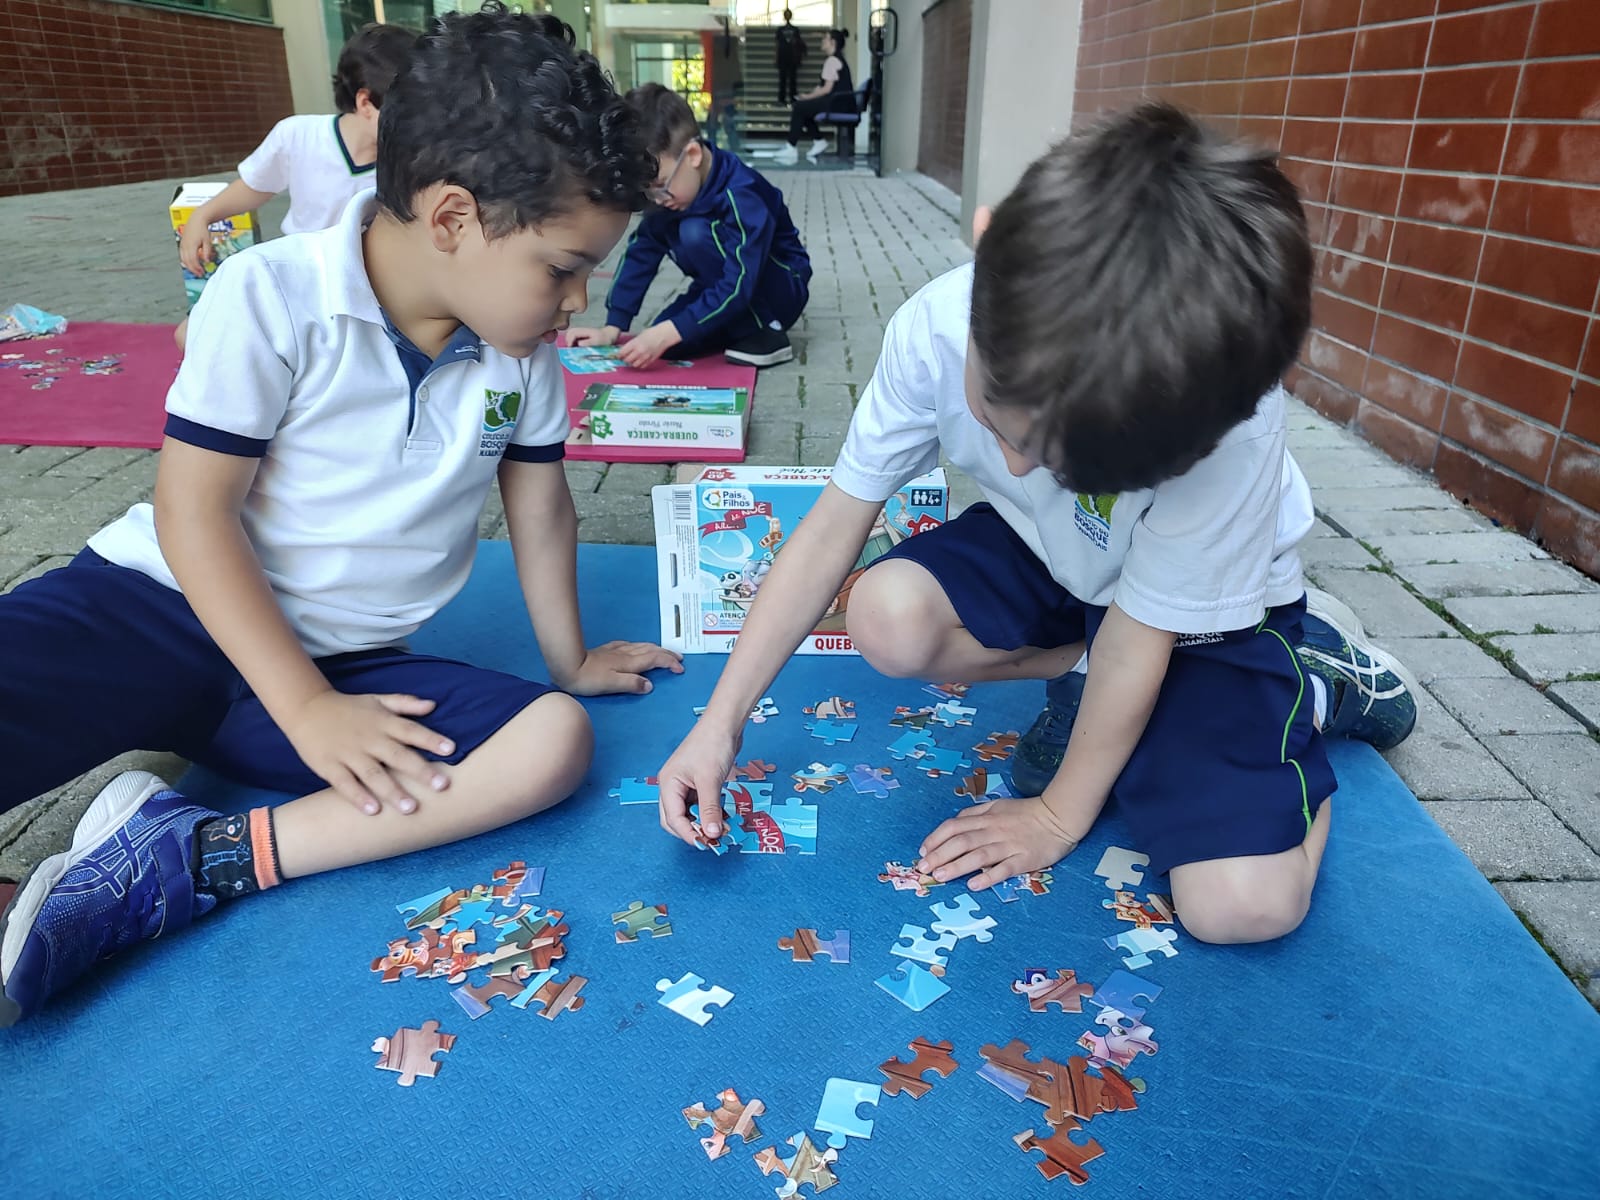 Associação de Pais - Quebra-cabeças e diversão para o Infantil 5 - Notícias  - Colégio do Bosque Mananciais